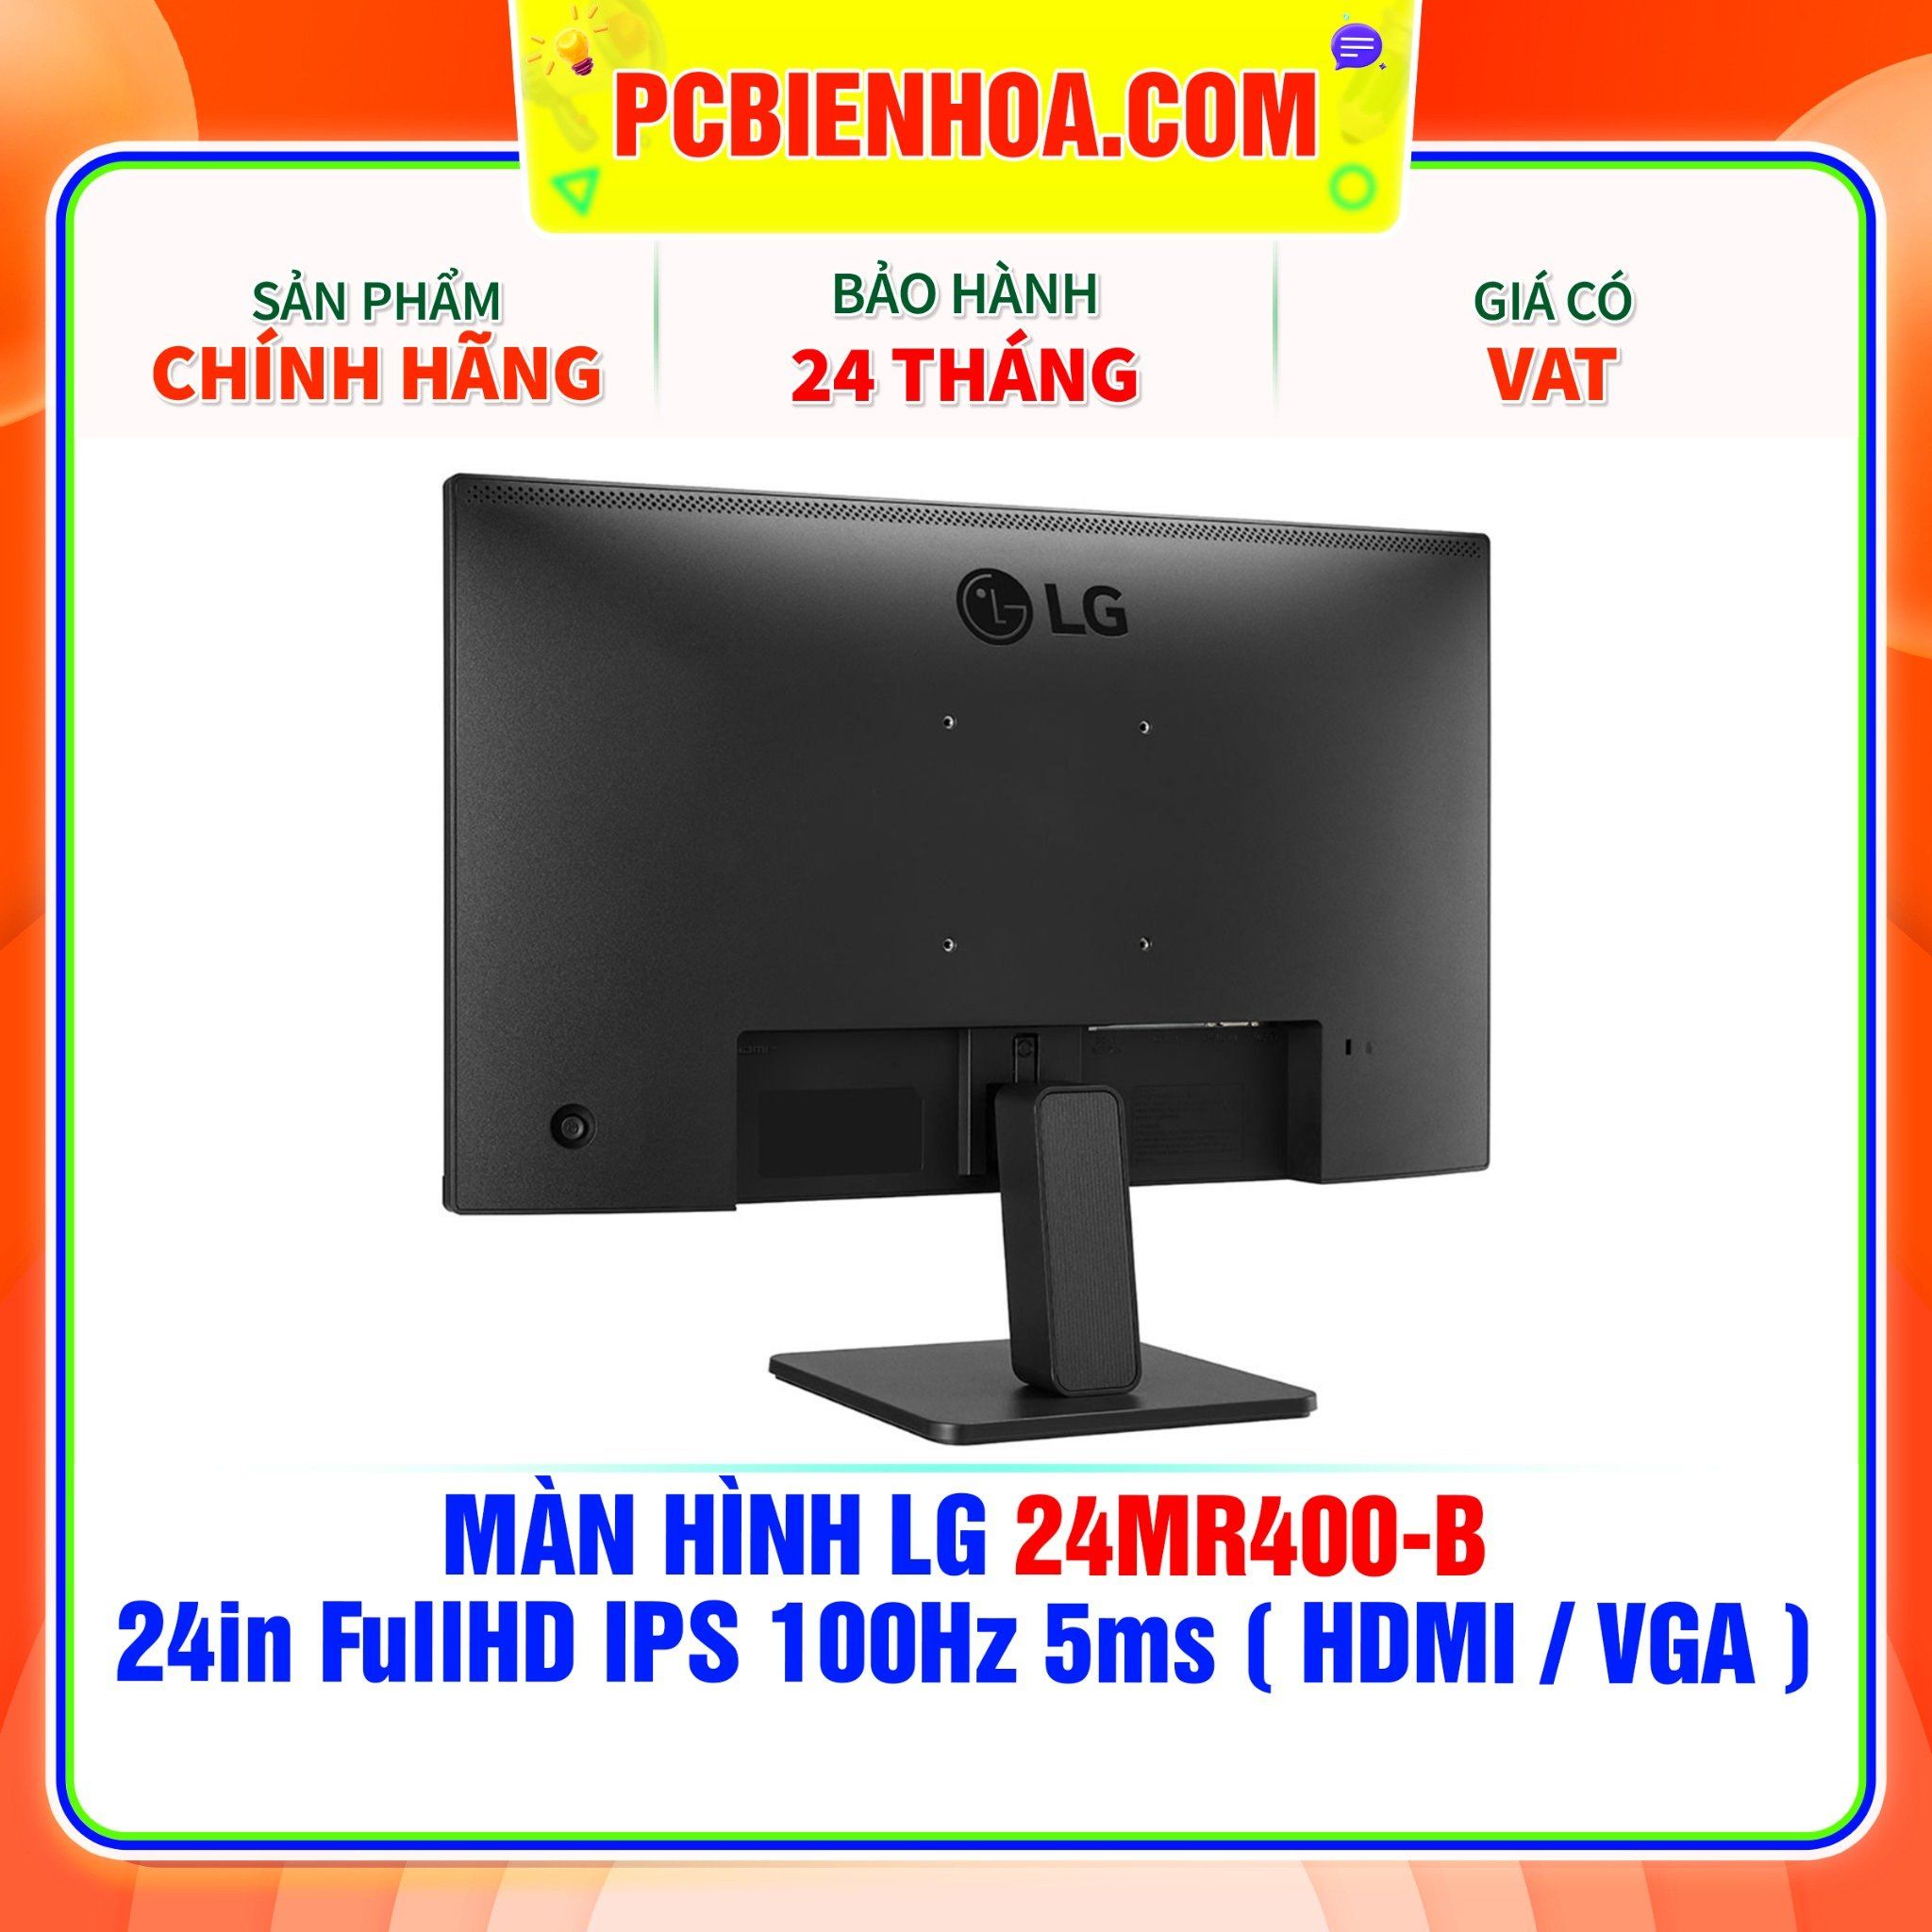  MÀN HÌNH LG 24MR400-B - 24in FullHD IPS 100Hz 5ms ( HDMI / VGA ) 